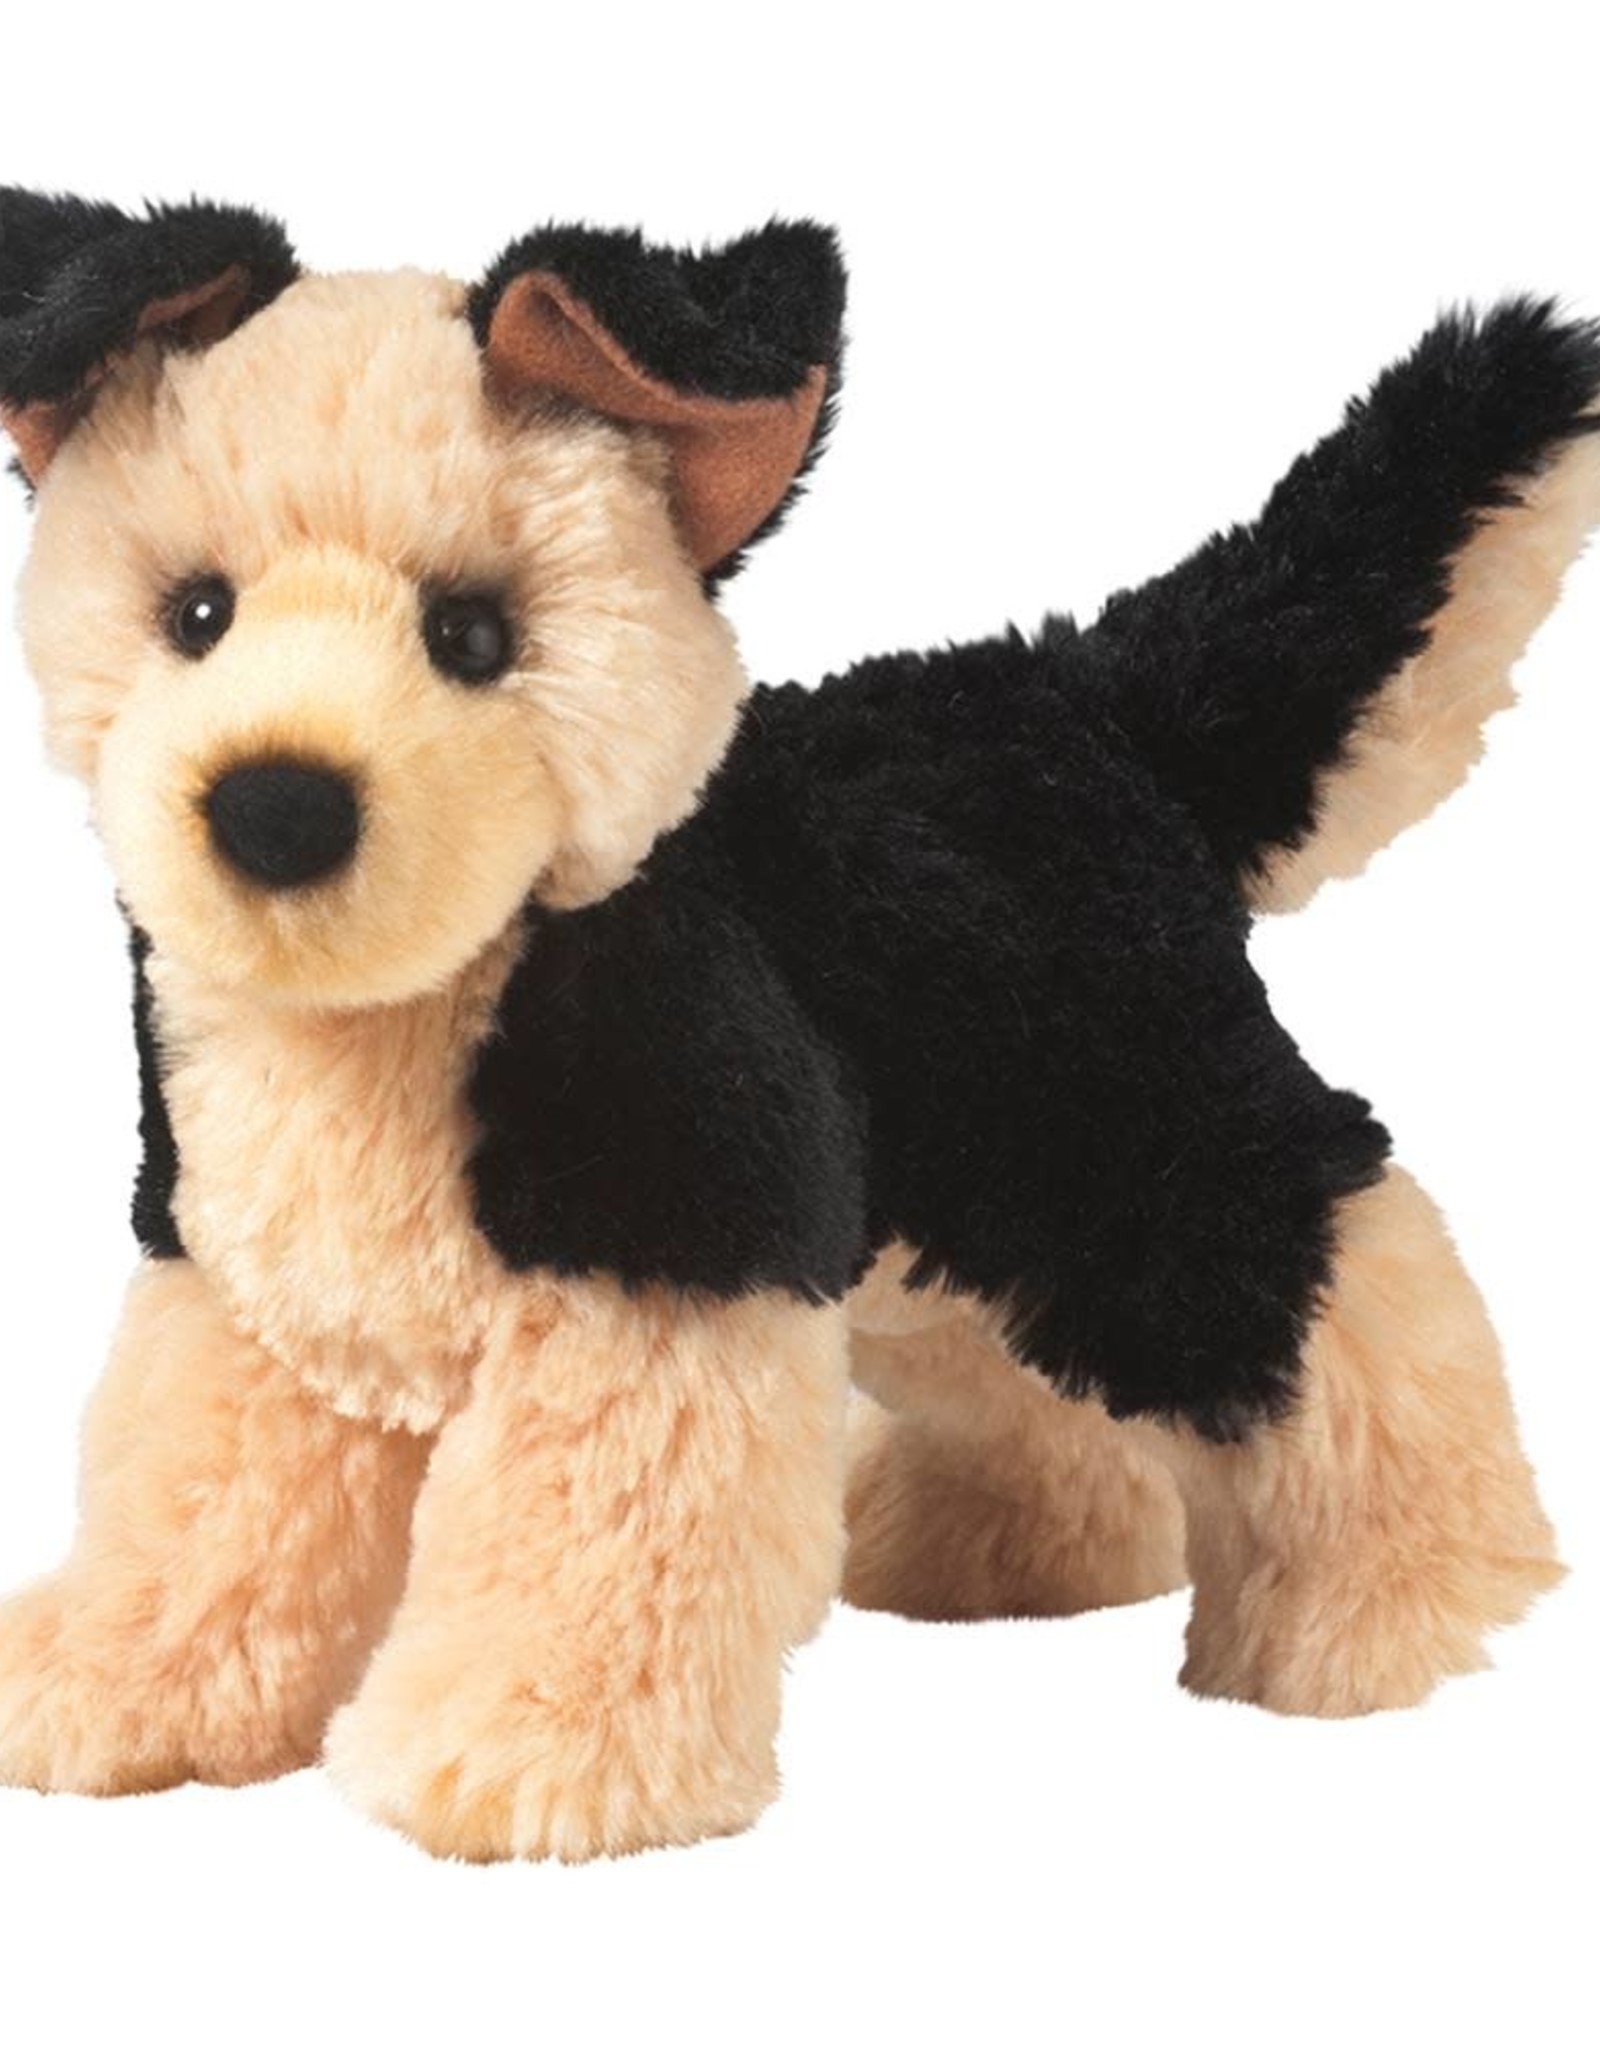 Douglas Sheba German Shepherd Dog Stuffed Animal